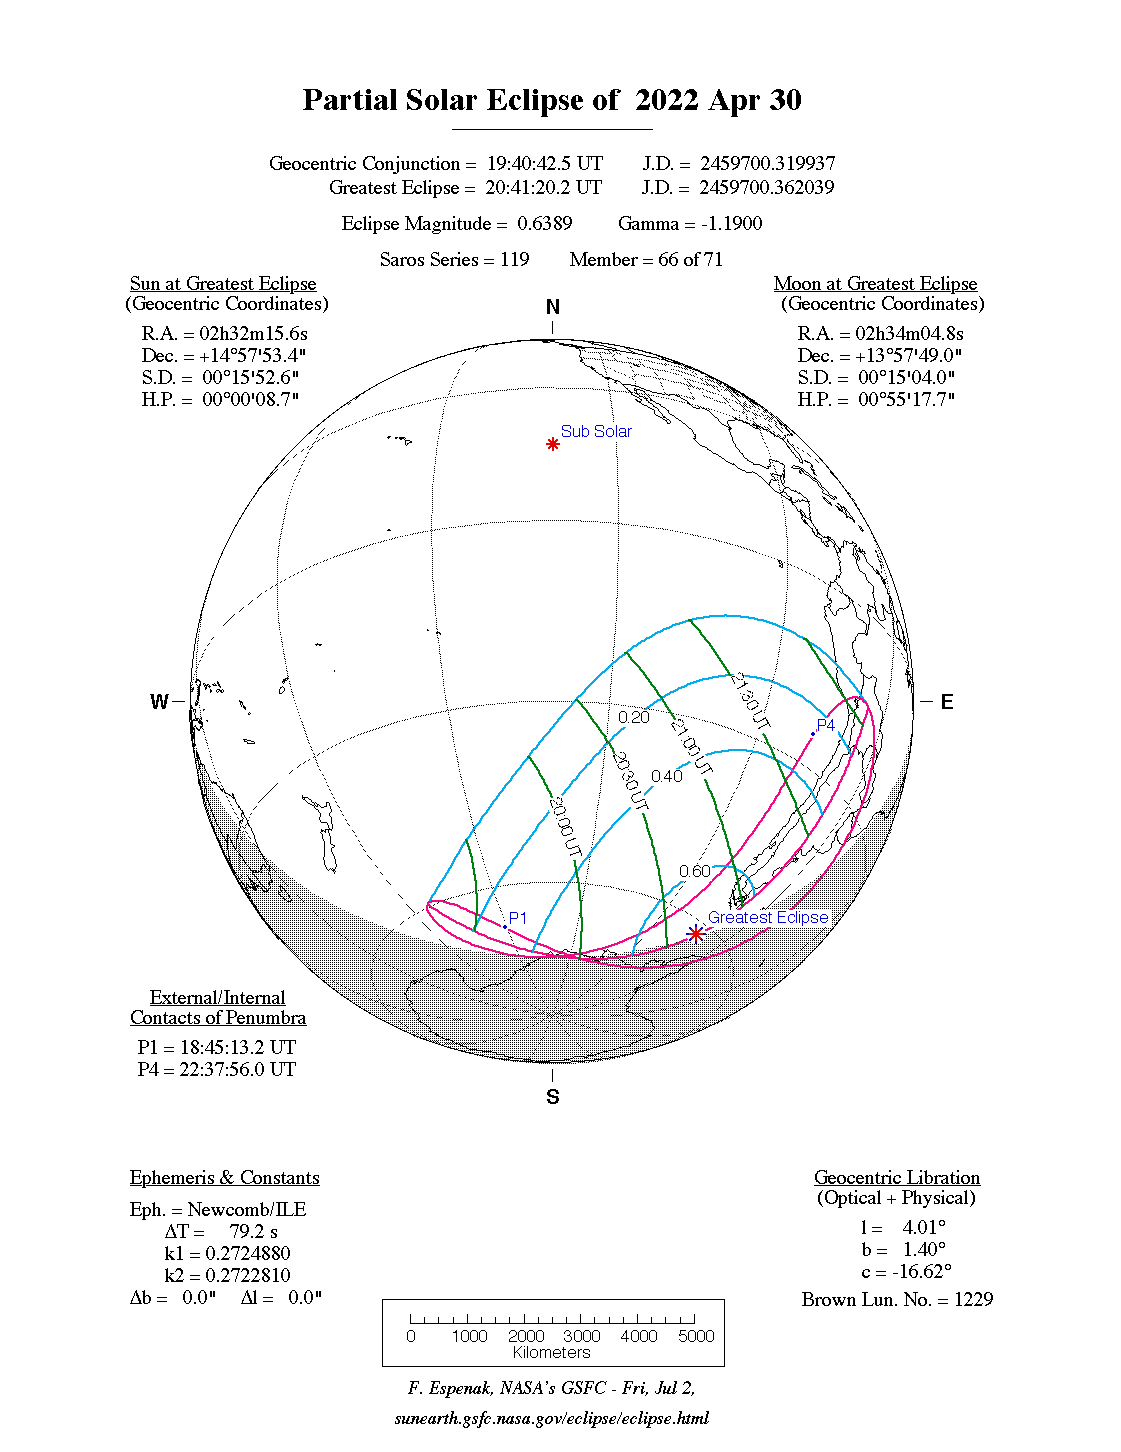 Verlauf der Partiellen Sonnenfinsternis am 30.04.2022